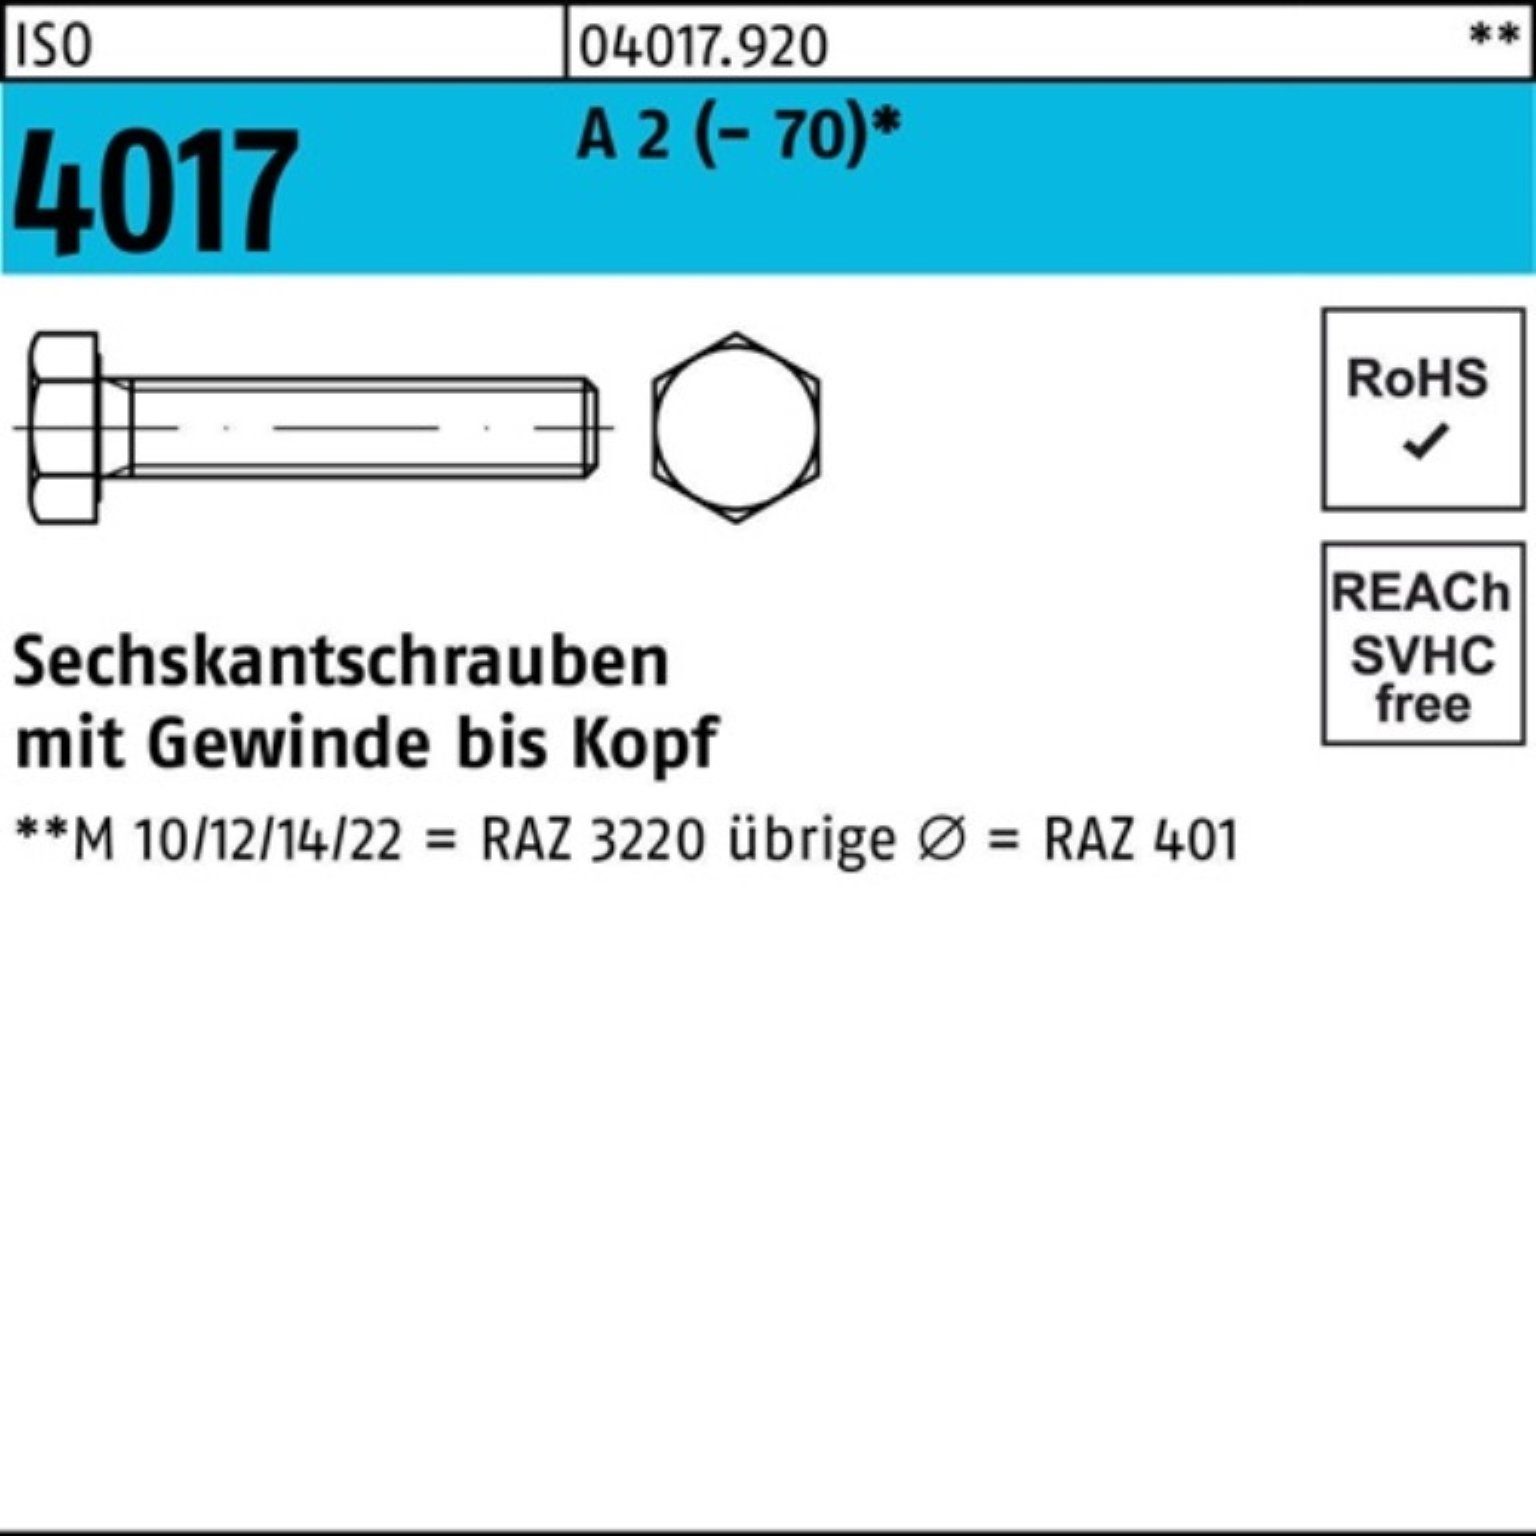 Bufab (70) Sechskantschraube 2 100er 100 A 100 Stück VG 4017 ISO M6x Pack Sechskantschraube